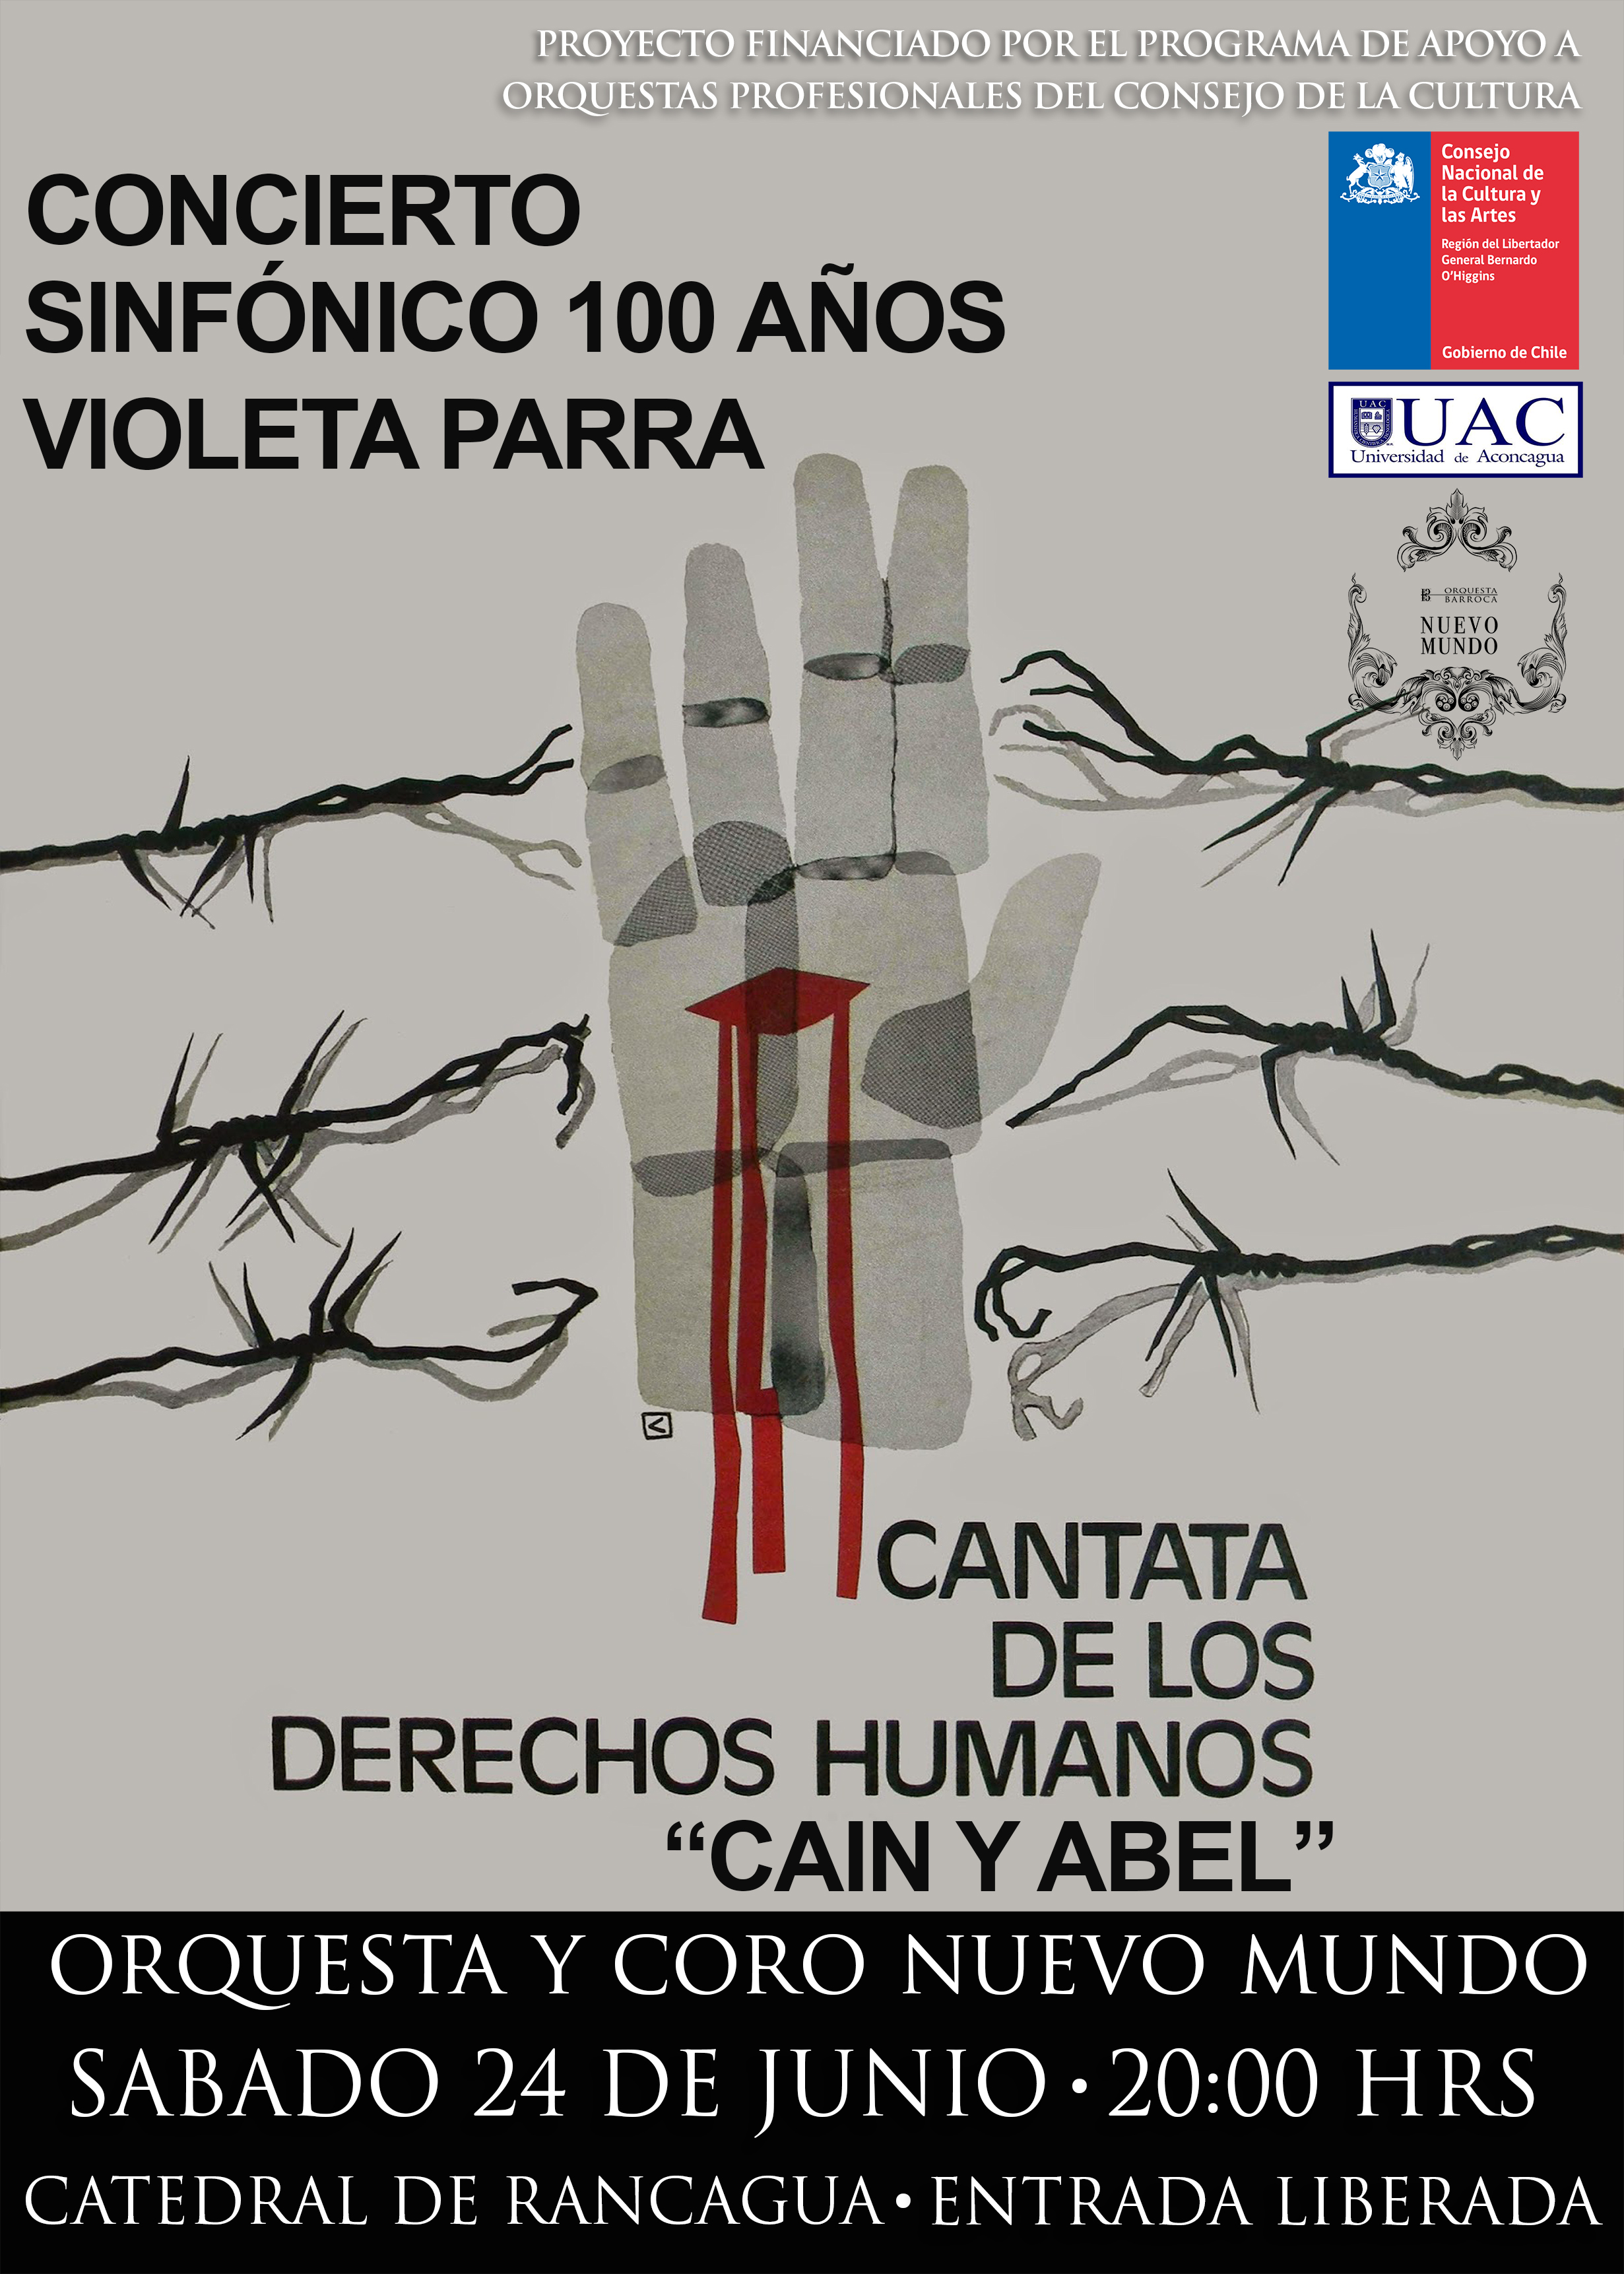 CONCIERTO HOMENAJE A VIOLETA PARRA Y CANTATA DE LOS DDHH @ CATEDRAL DE RANCAGUA